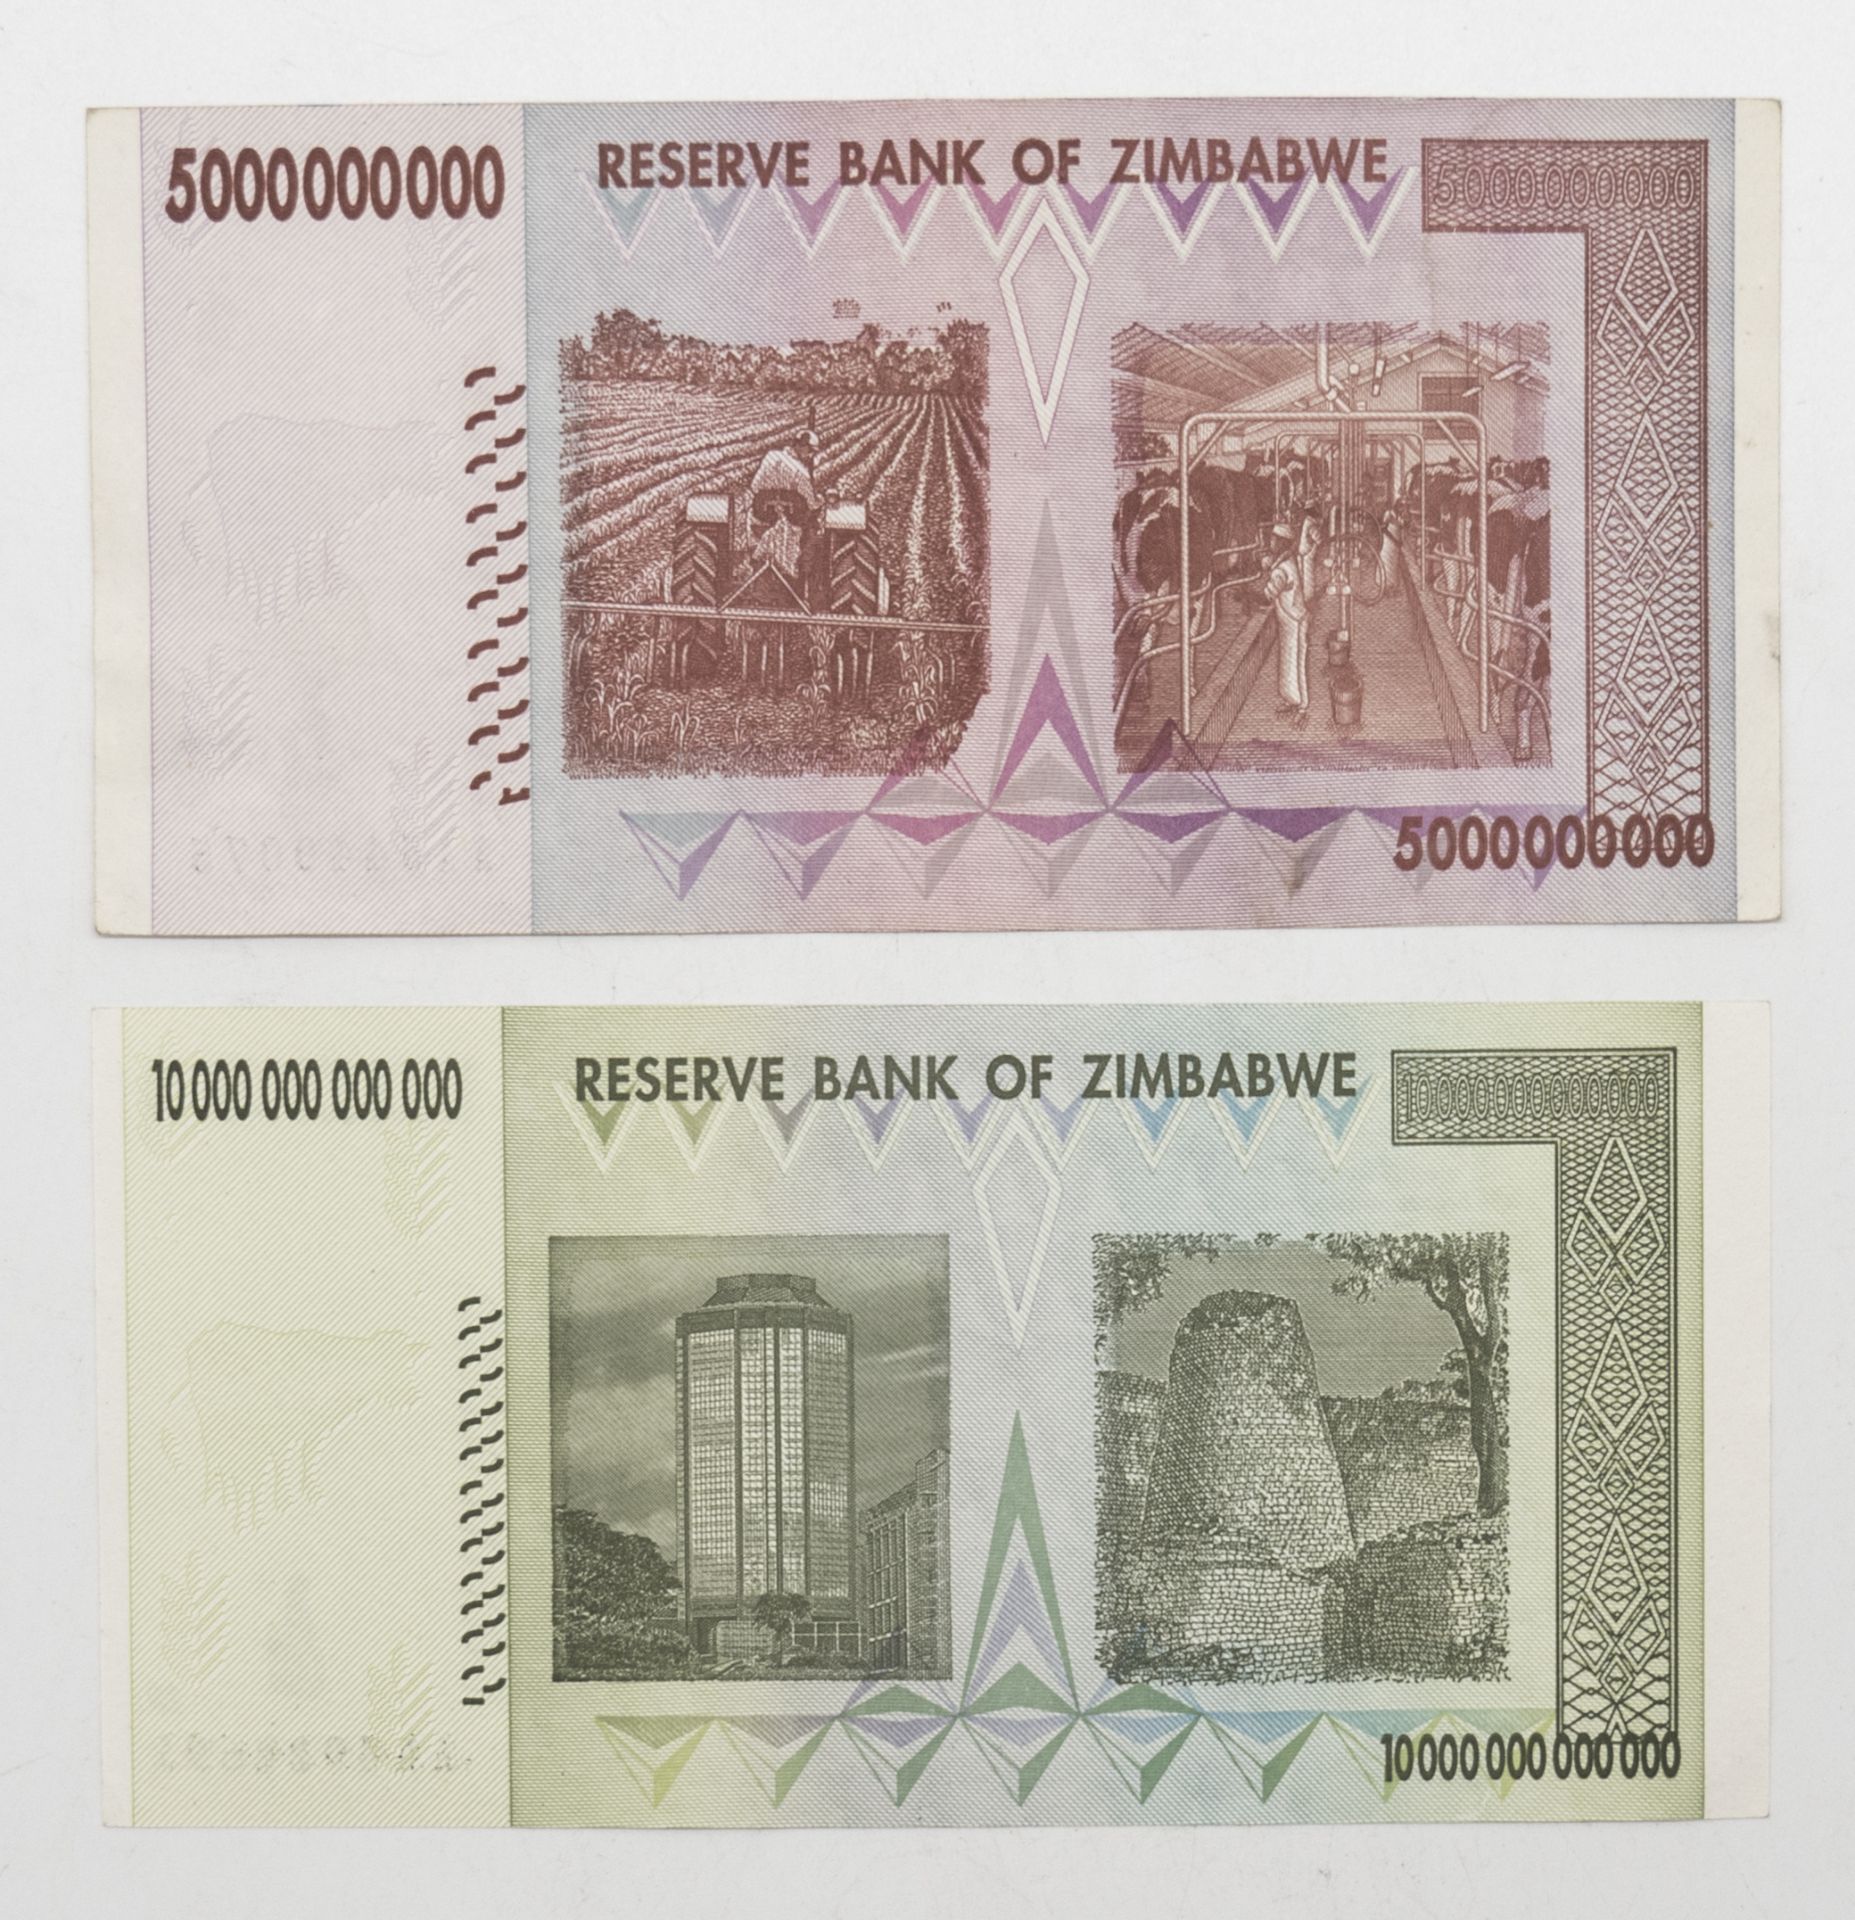 Simbabwe, zwei Banknoten: 5 Billion- und 10 Trillion Dollars. Erhaltung: Unc. - Bild 2 aus 2